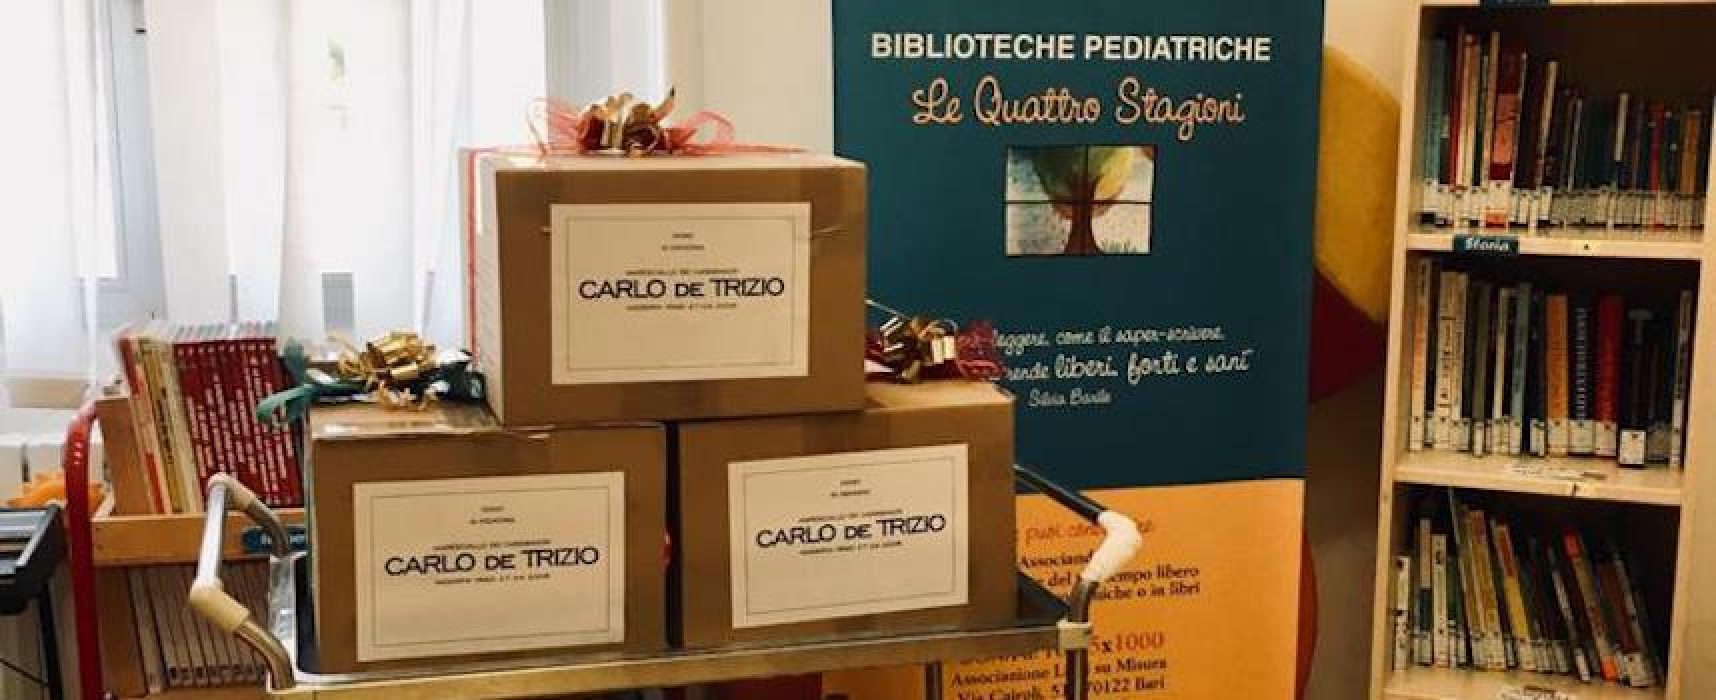 Il comitato Carlo de Trizio dona materiale didattico per bimbi dell’oncologico di Bari